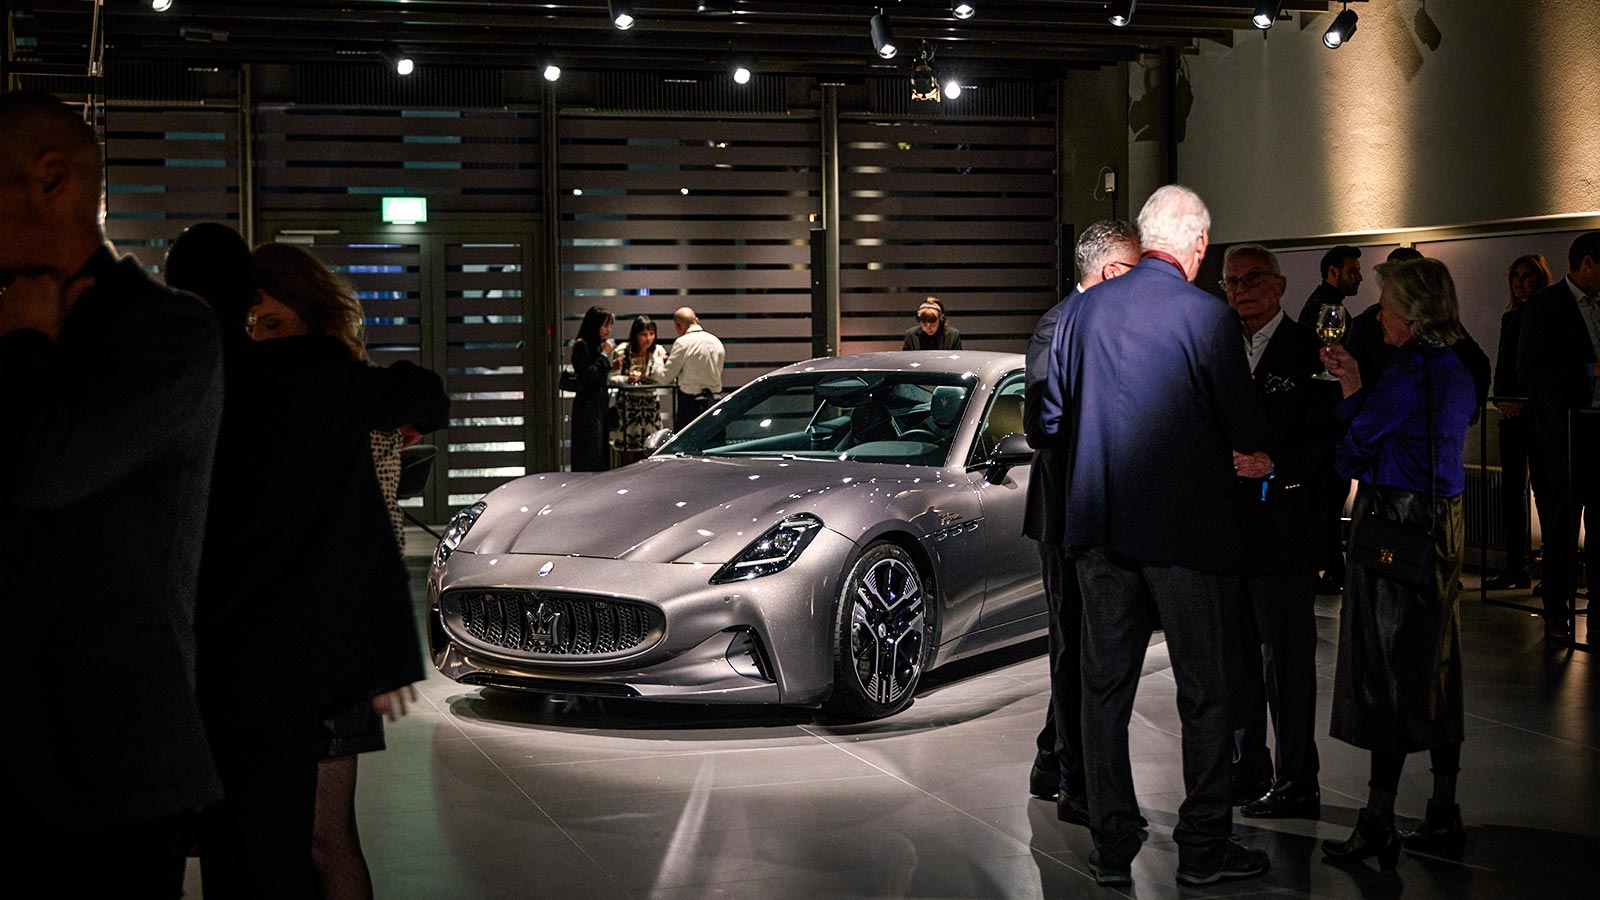 Eröffnung des Maserati-Showrooms in Zürich Teaser